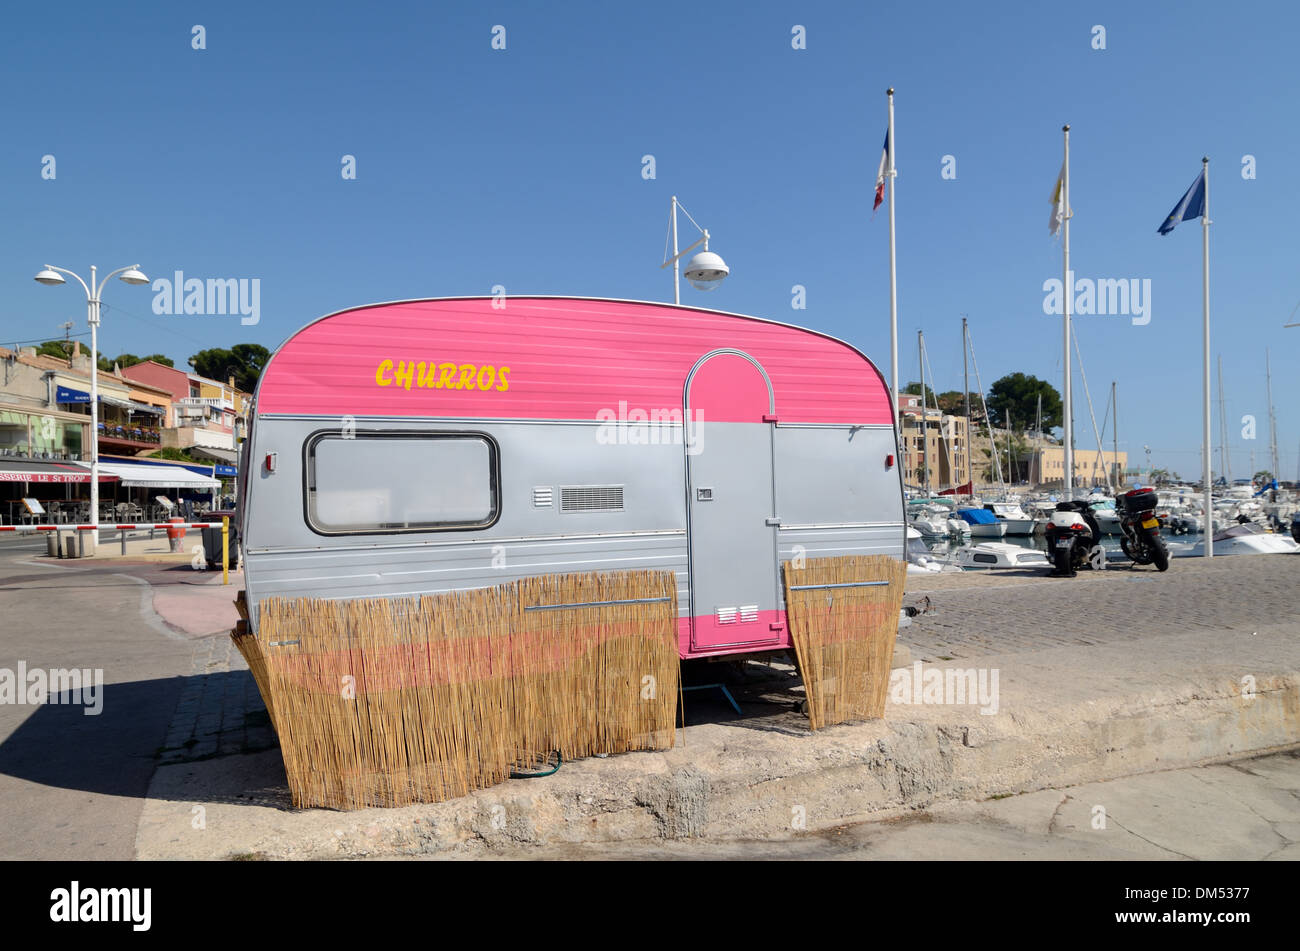 Caravane rose utilisé comme Fast Food ou camion alimentaire Vente de churros sur le port Carry-le-Rouet Provence France Banque D'Images